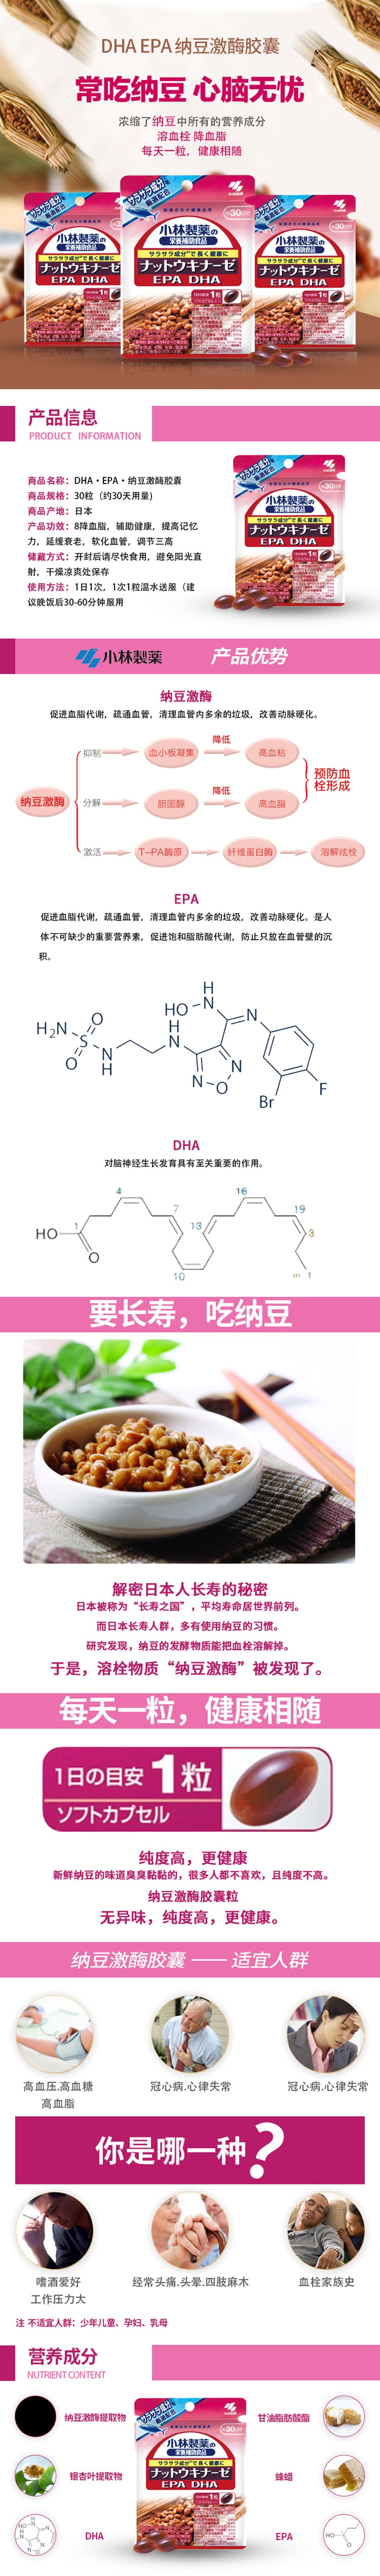 【日本直邮 】小林制药 纳豆激酶+DHA EPA 60粒30日 EX升级版